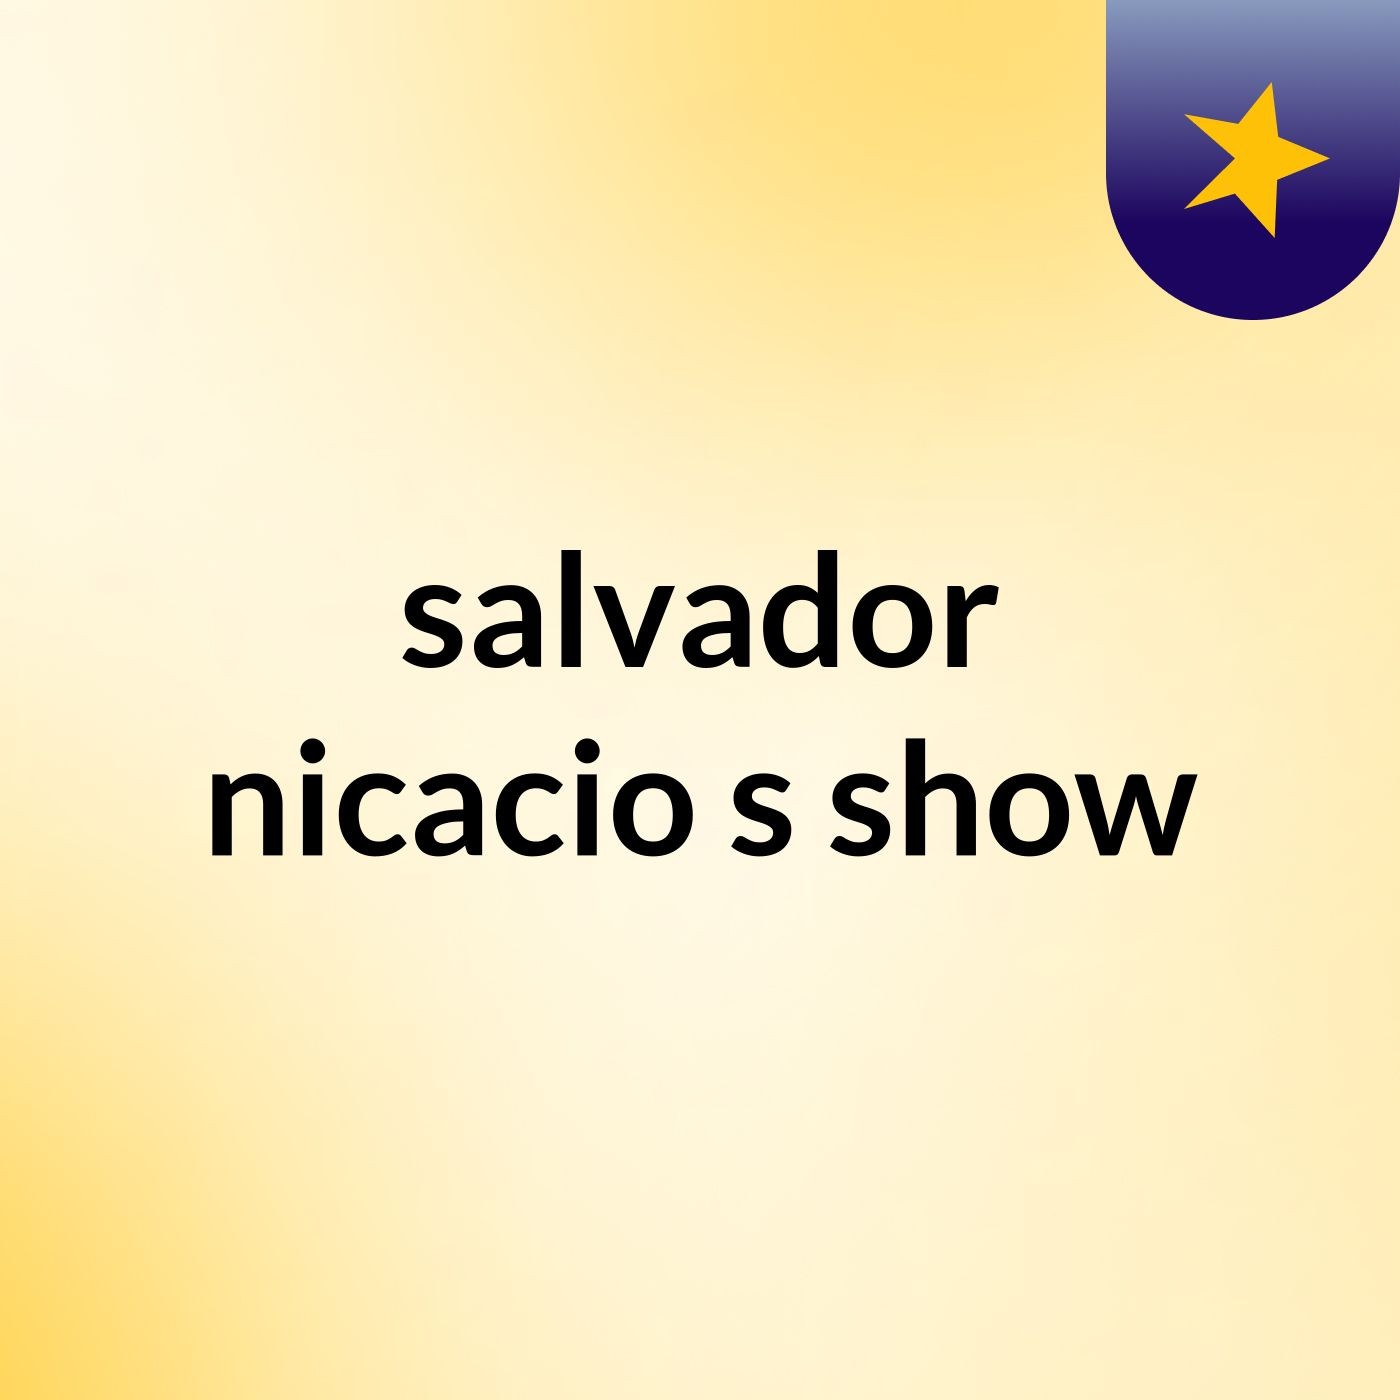 salvador nicacio's show